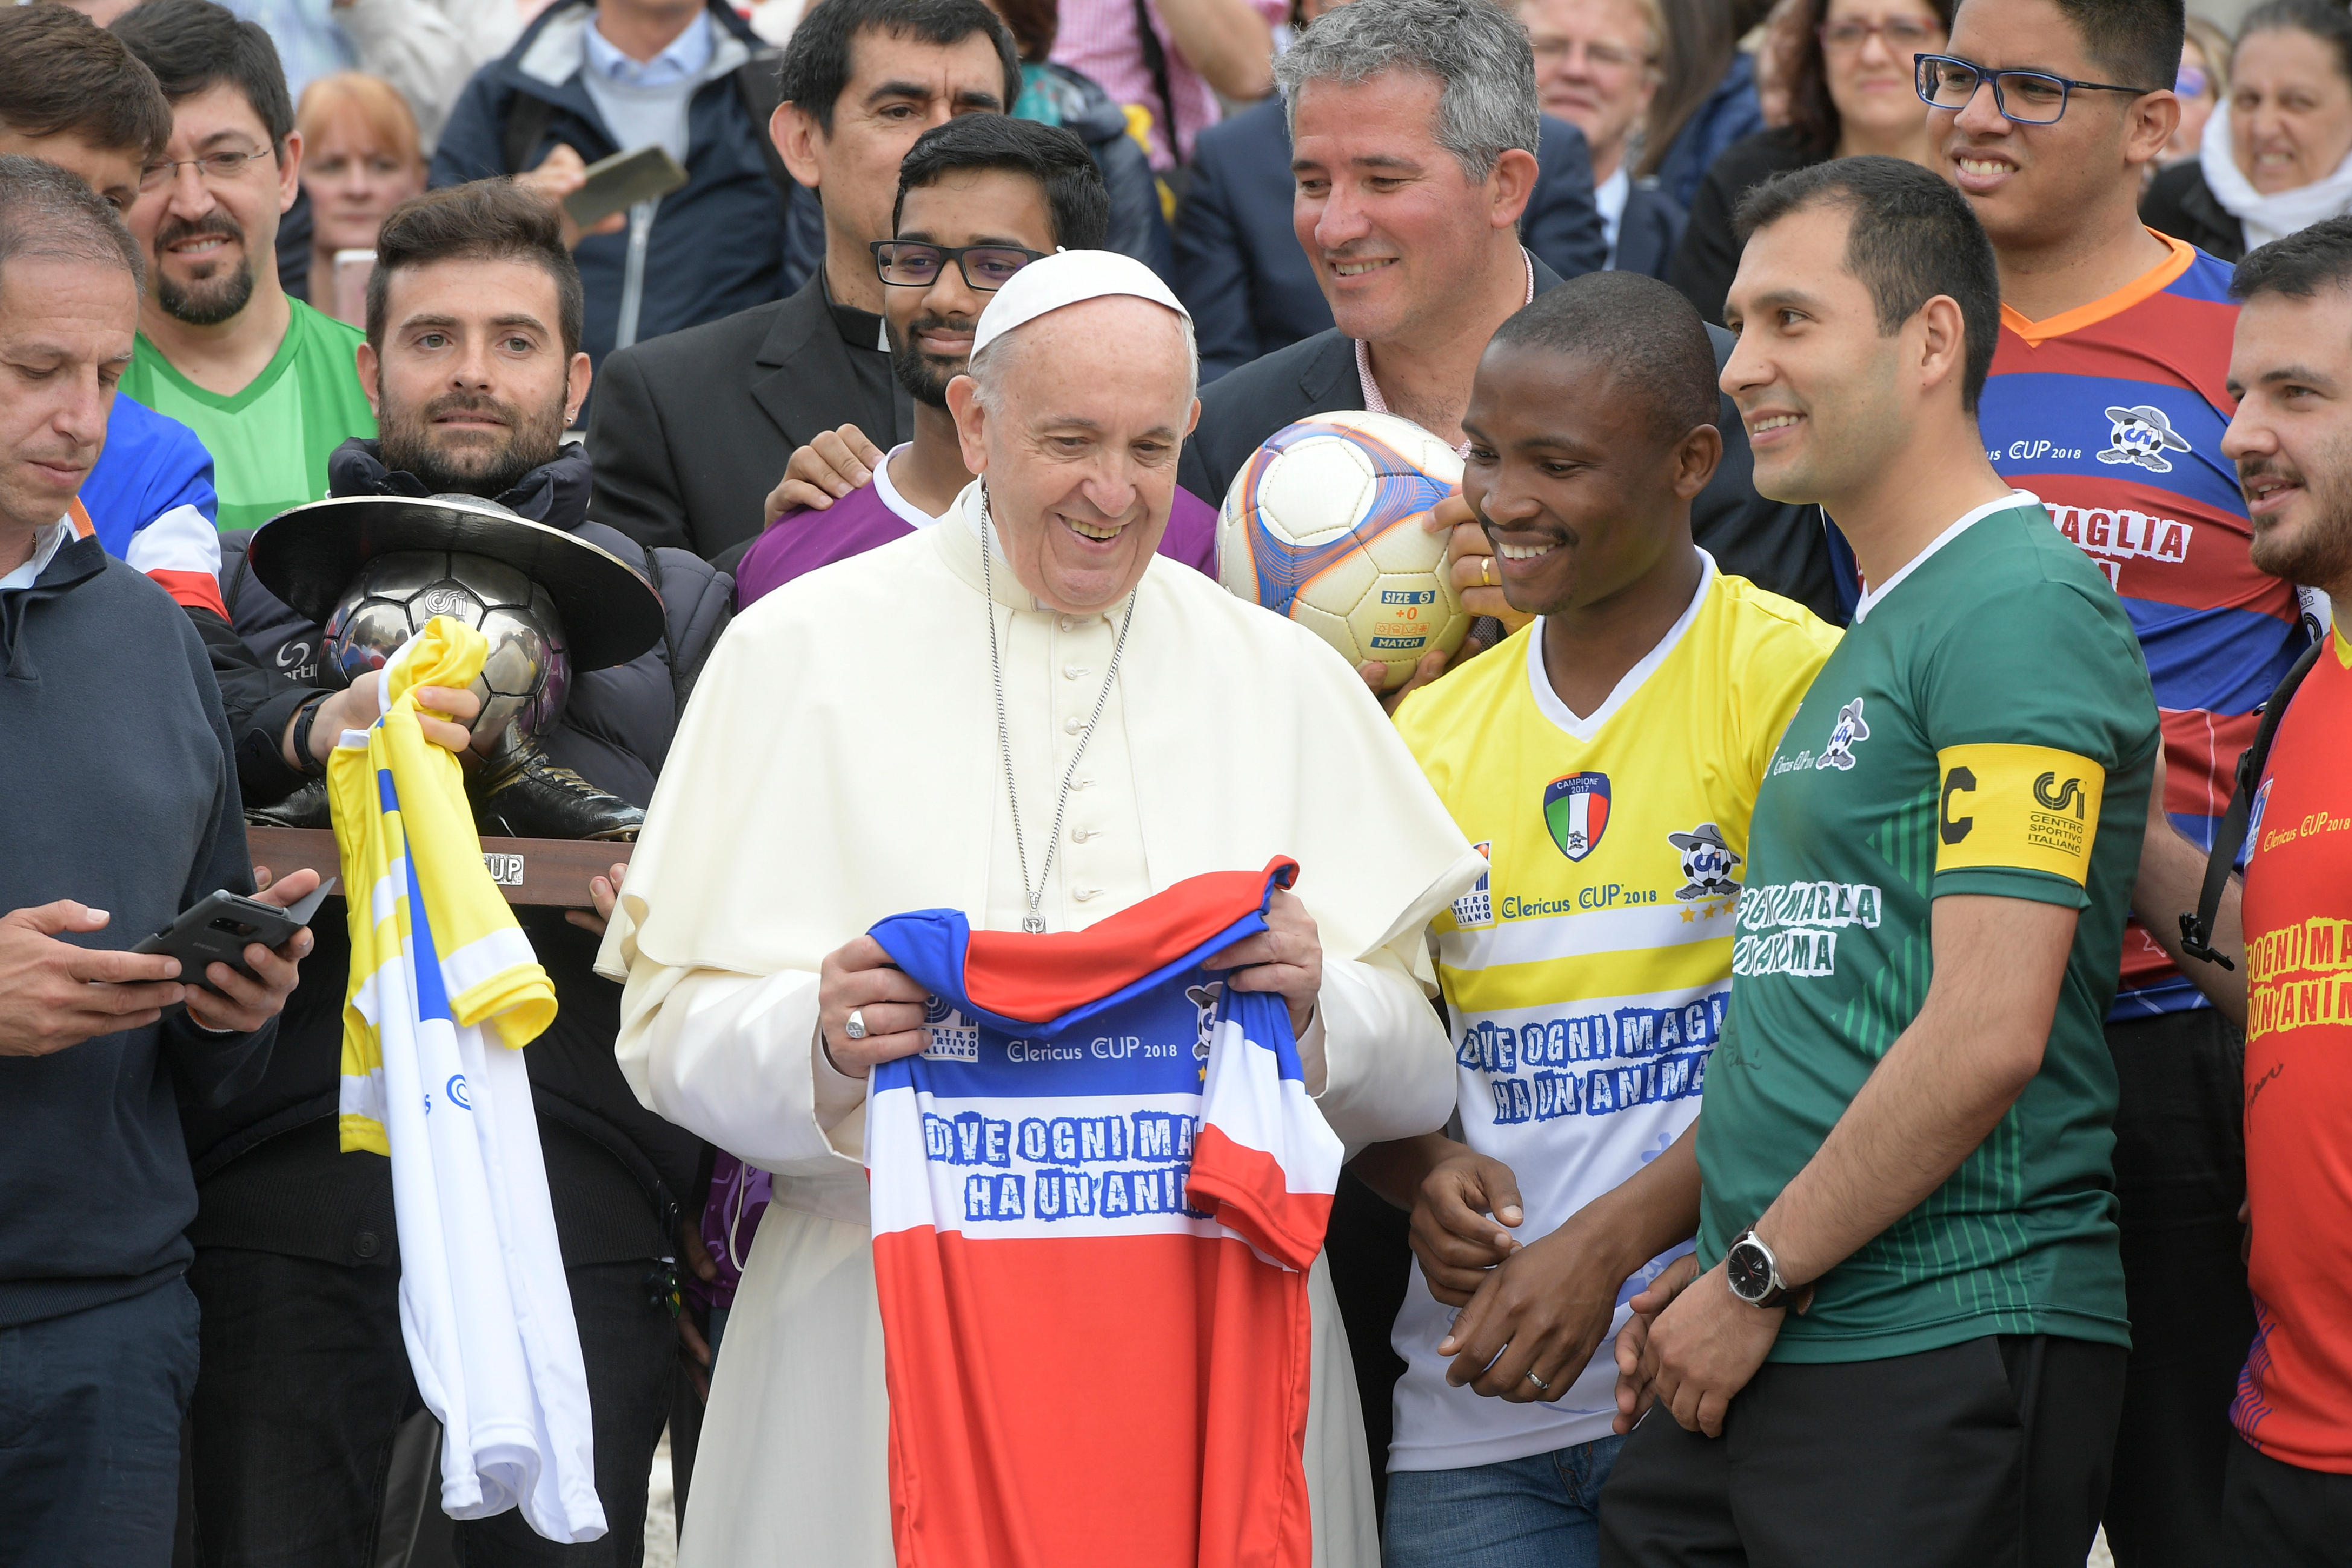 Joueurs de football de la Clericus Cup © Vatican News